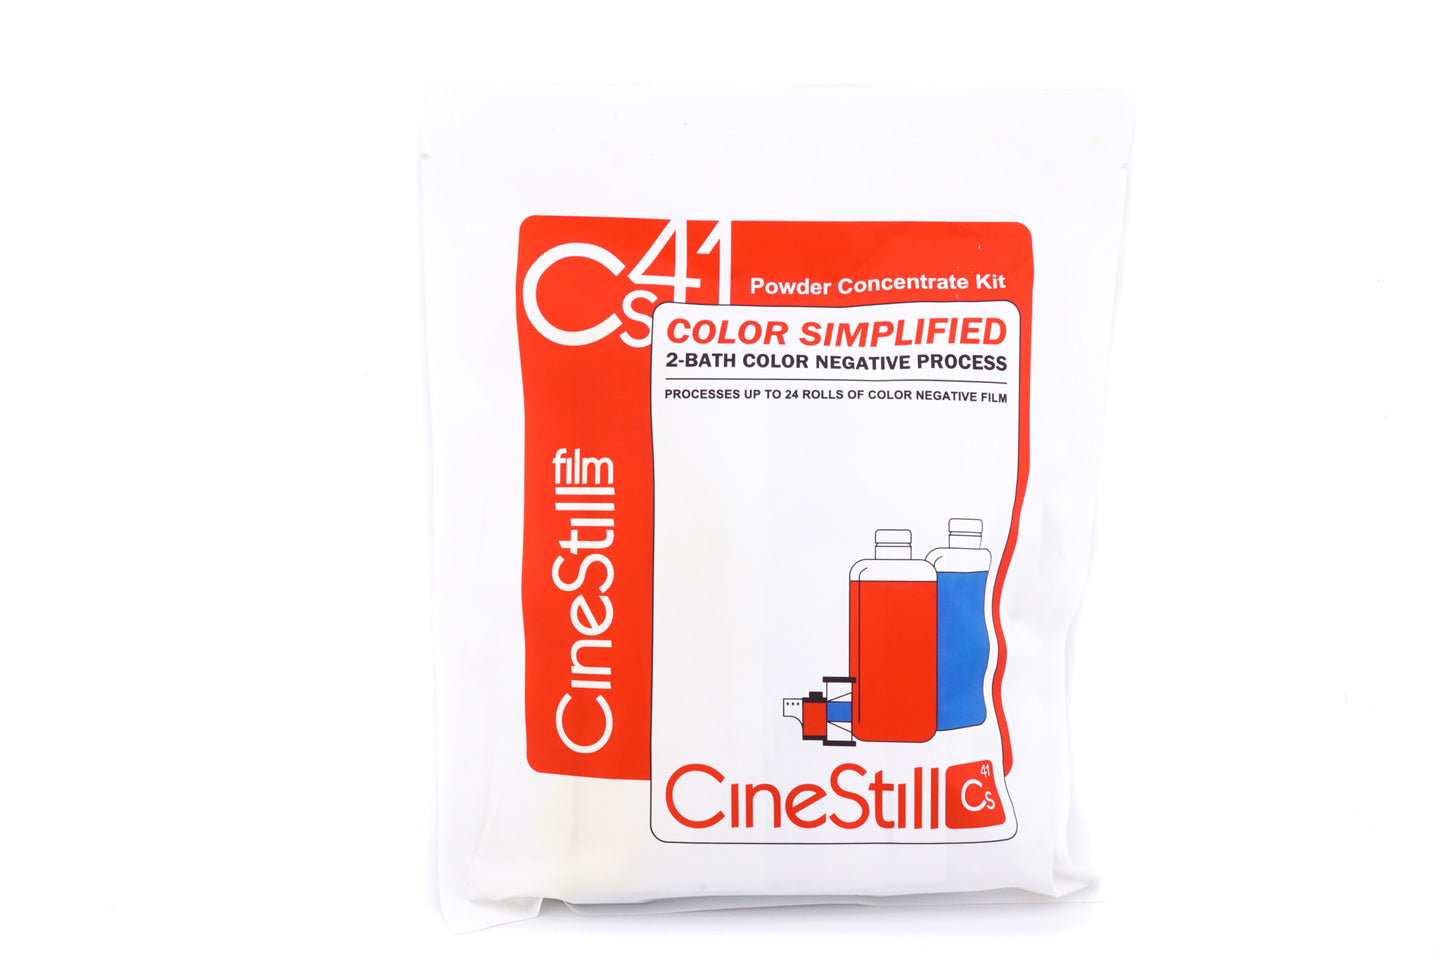 Cinestill Cs41 Simplified Kit Powder C-41 Developer